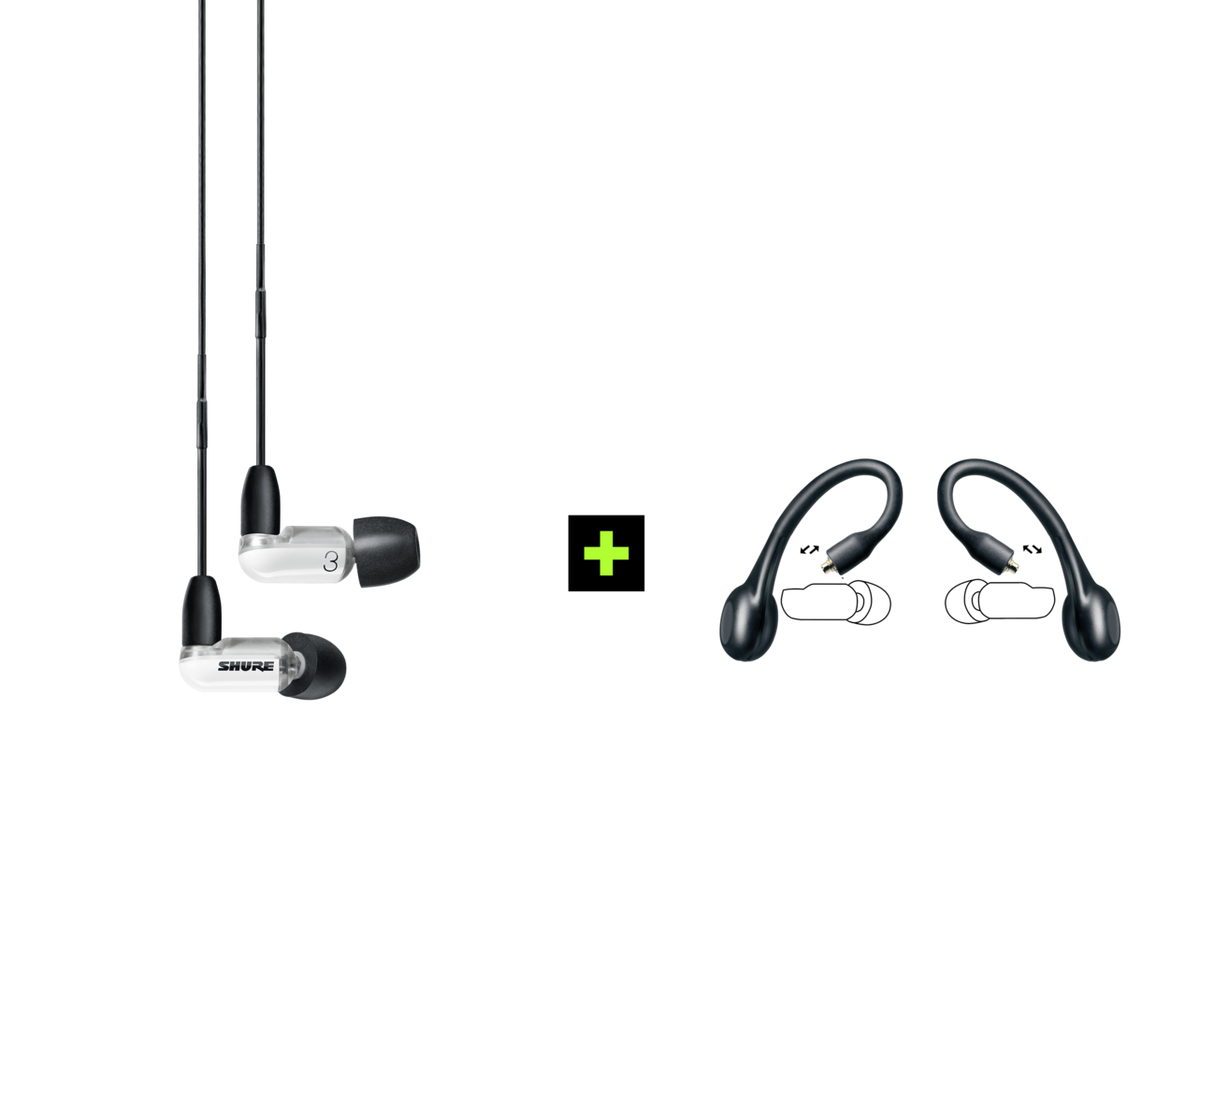 Shure AONIC 3 TRUE WIRELESS EARPHONE BUNDLE,  Ausinių ir belaidžių ausinių adapterio rinkinys (įvairių spalvų) - balta